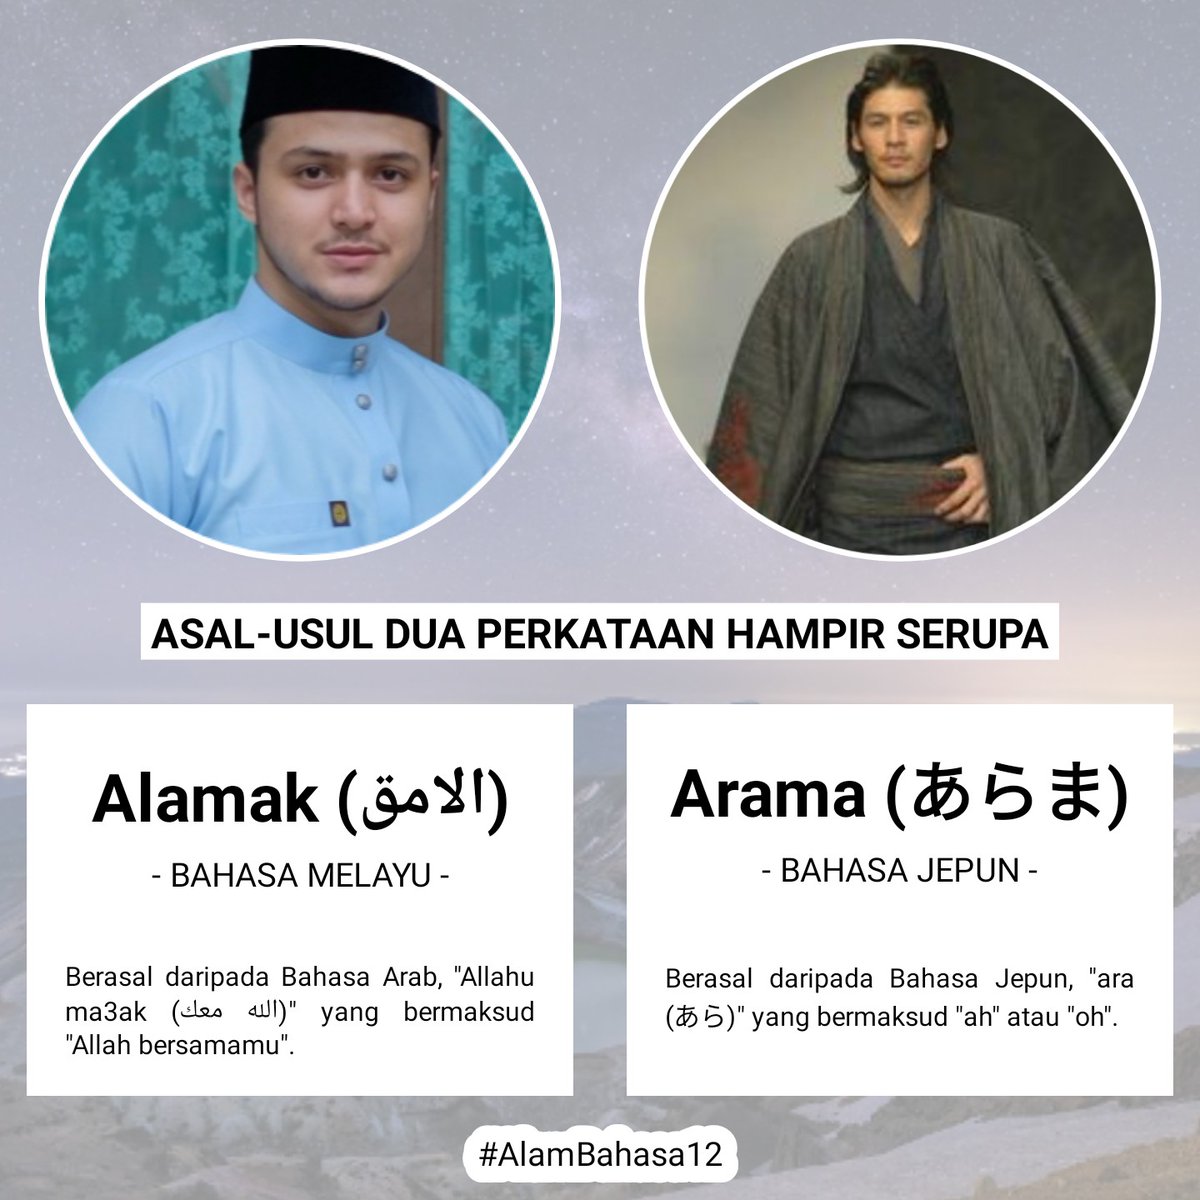 Hantaran Melayu dan Jepun ini disampaikan oleh #AlamBahasa12.